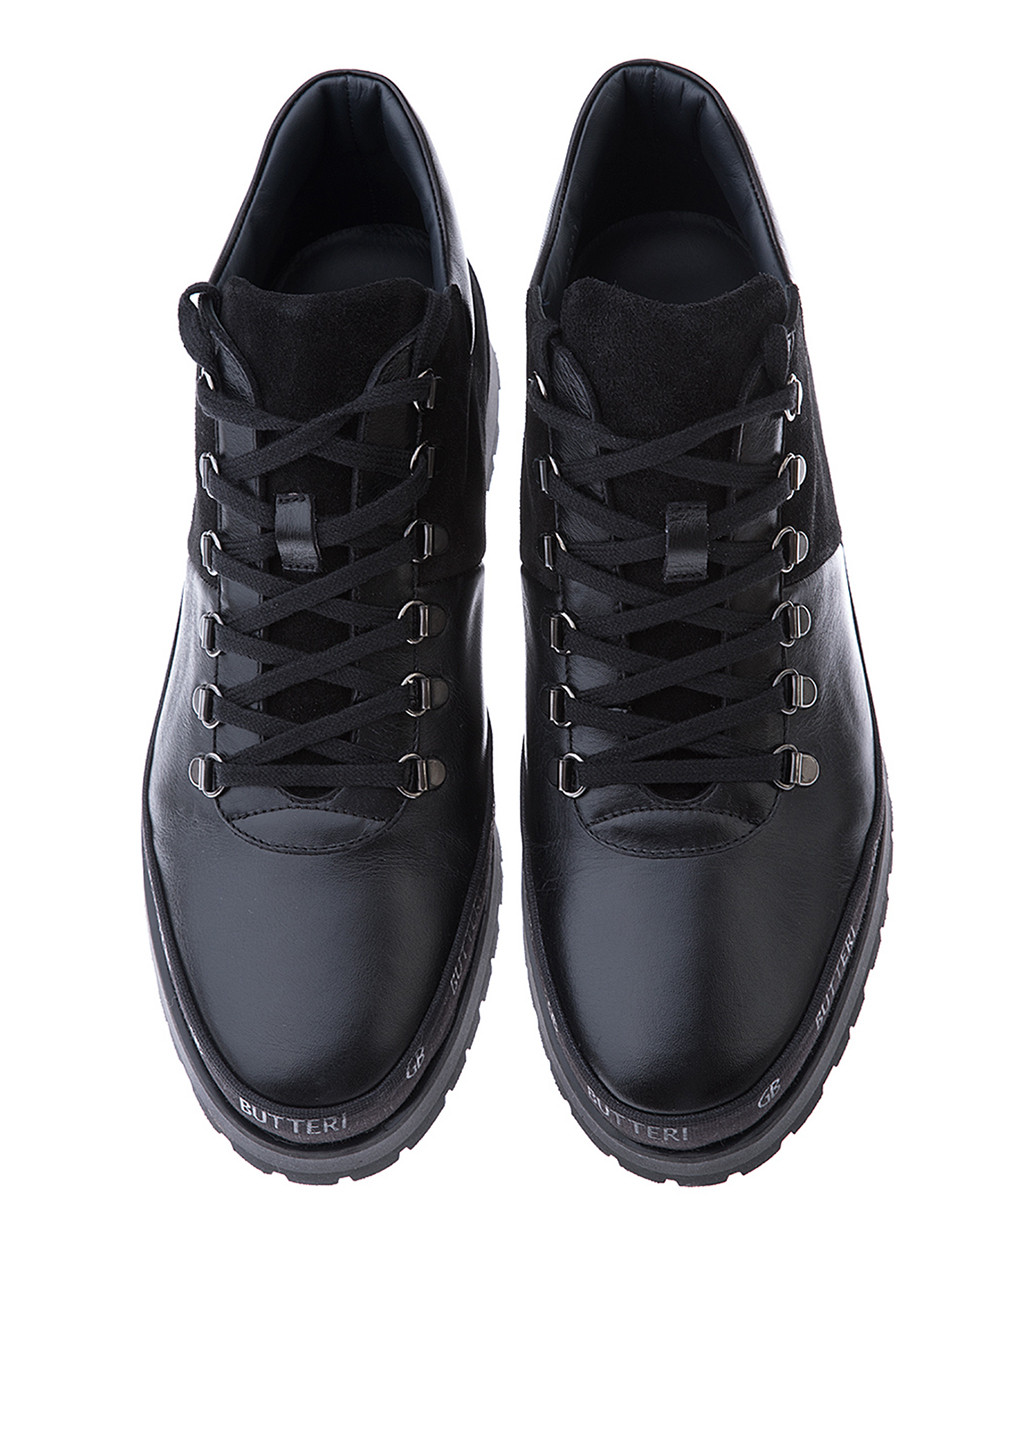 Черные осенние ботинки редвинги GF.BUTERI